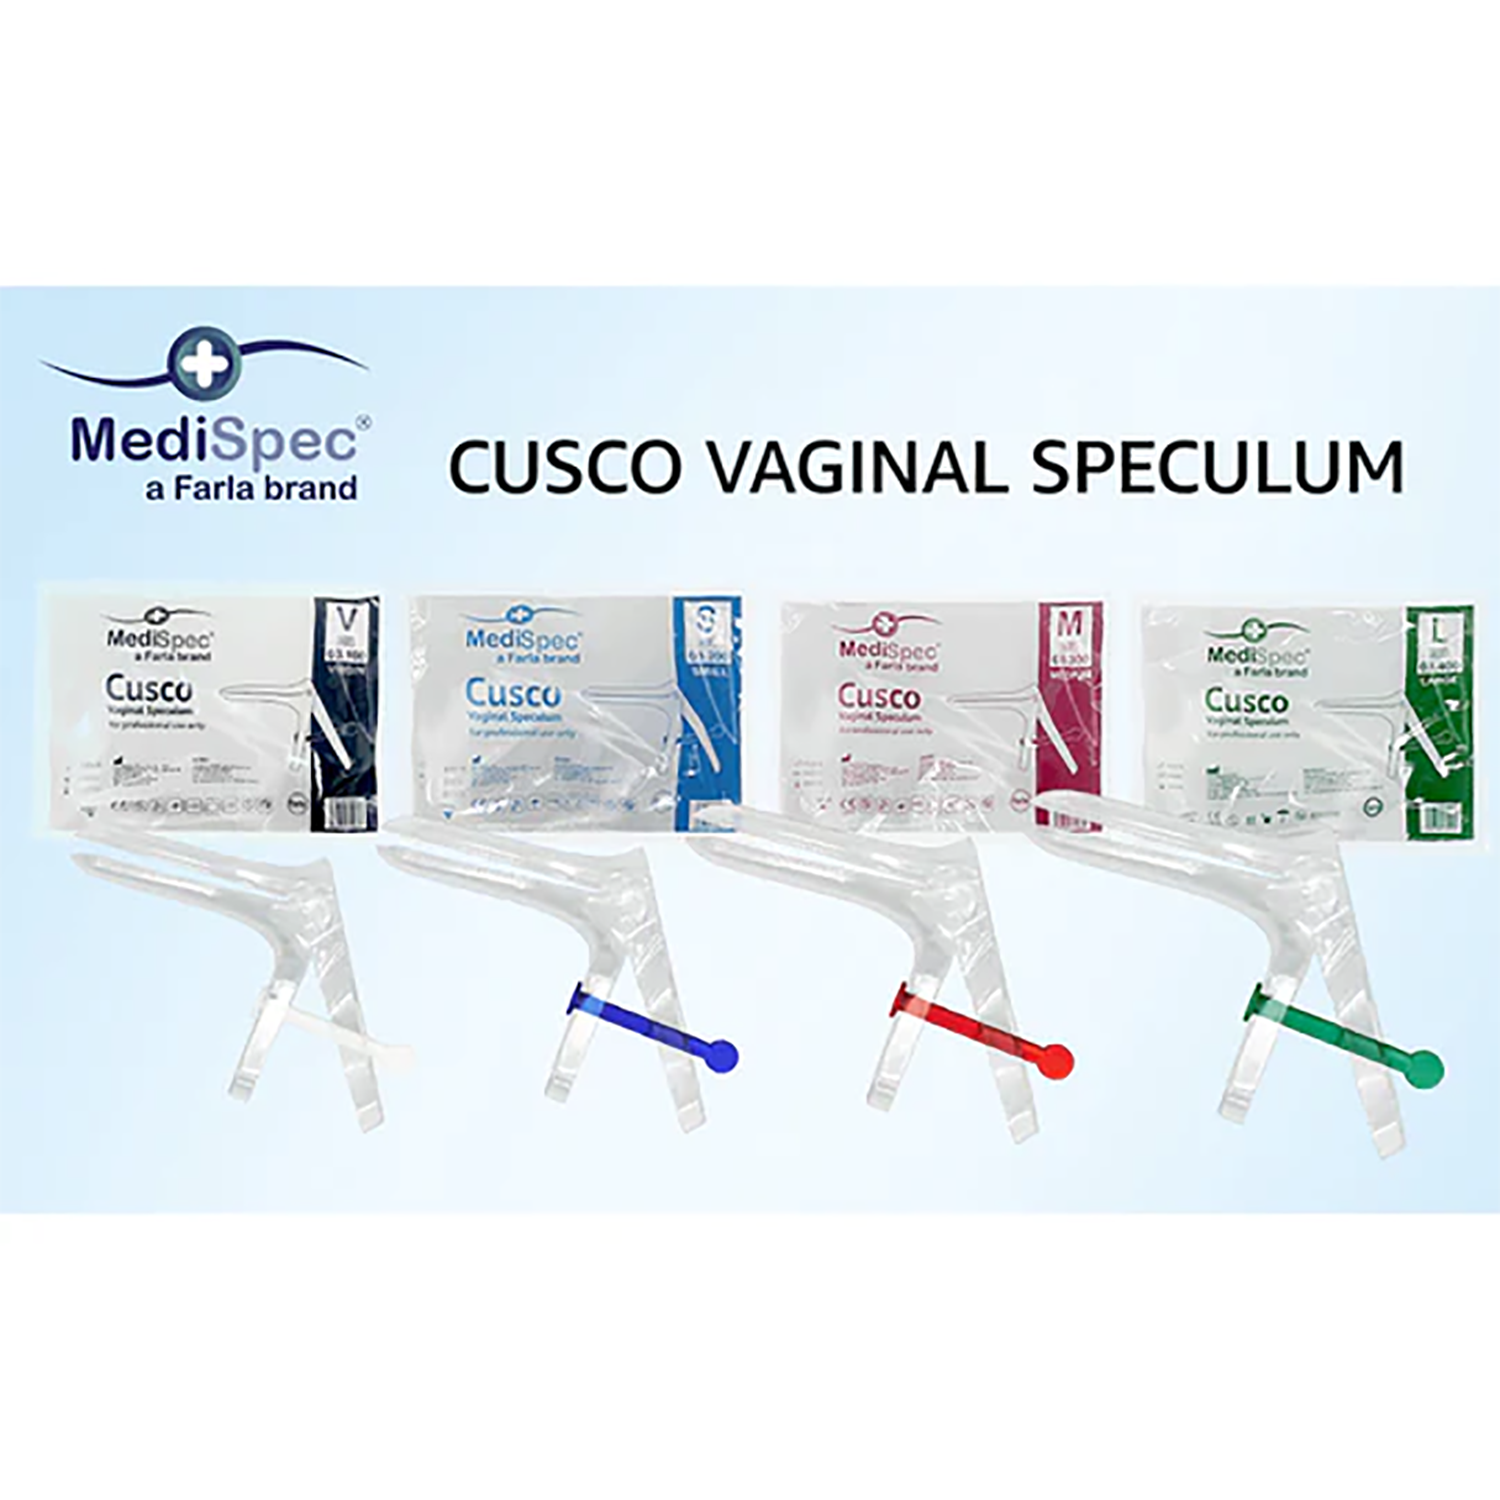 MediSpec Cusco Vaginal Speculum (Locking Mechanism) | Single (7)